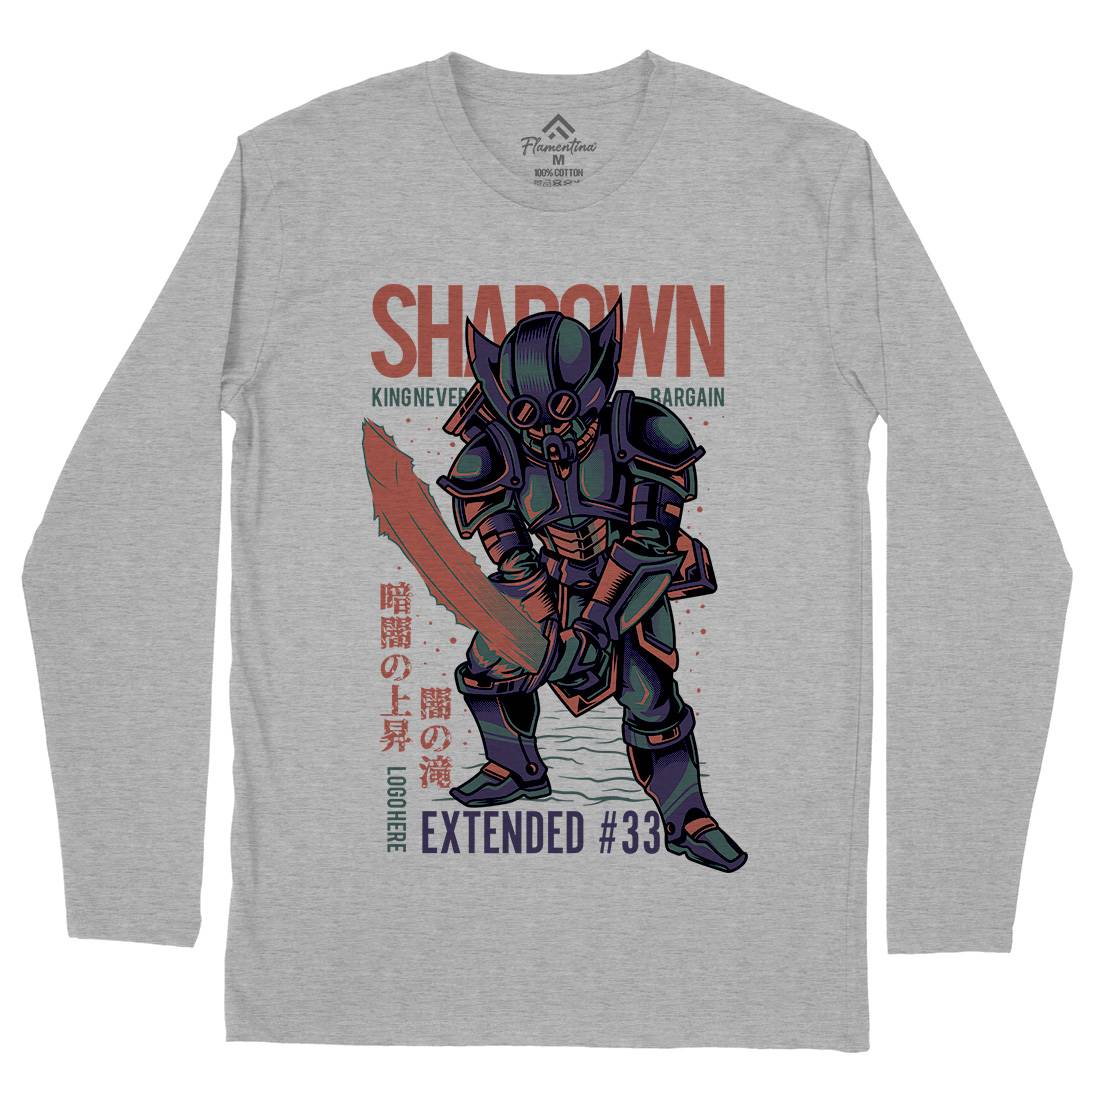 Shadown Knight Mens Long Sleeve T-Shirt Warriors D812